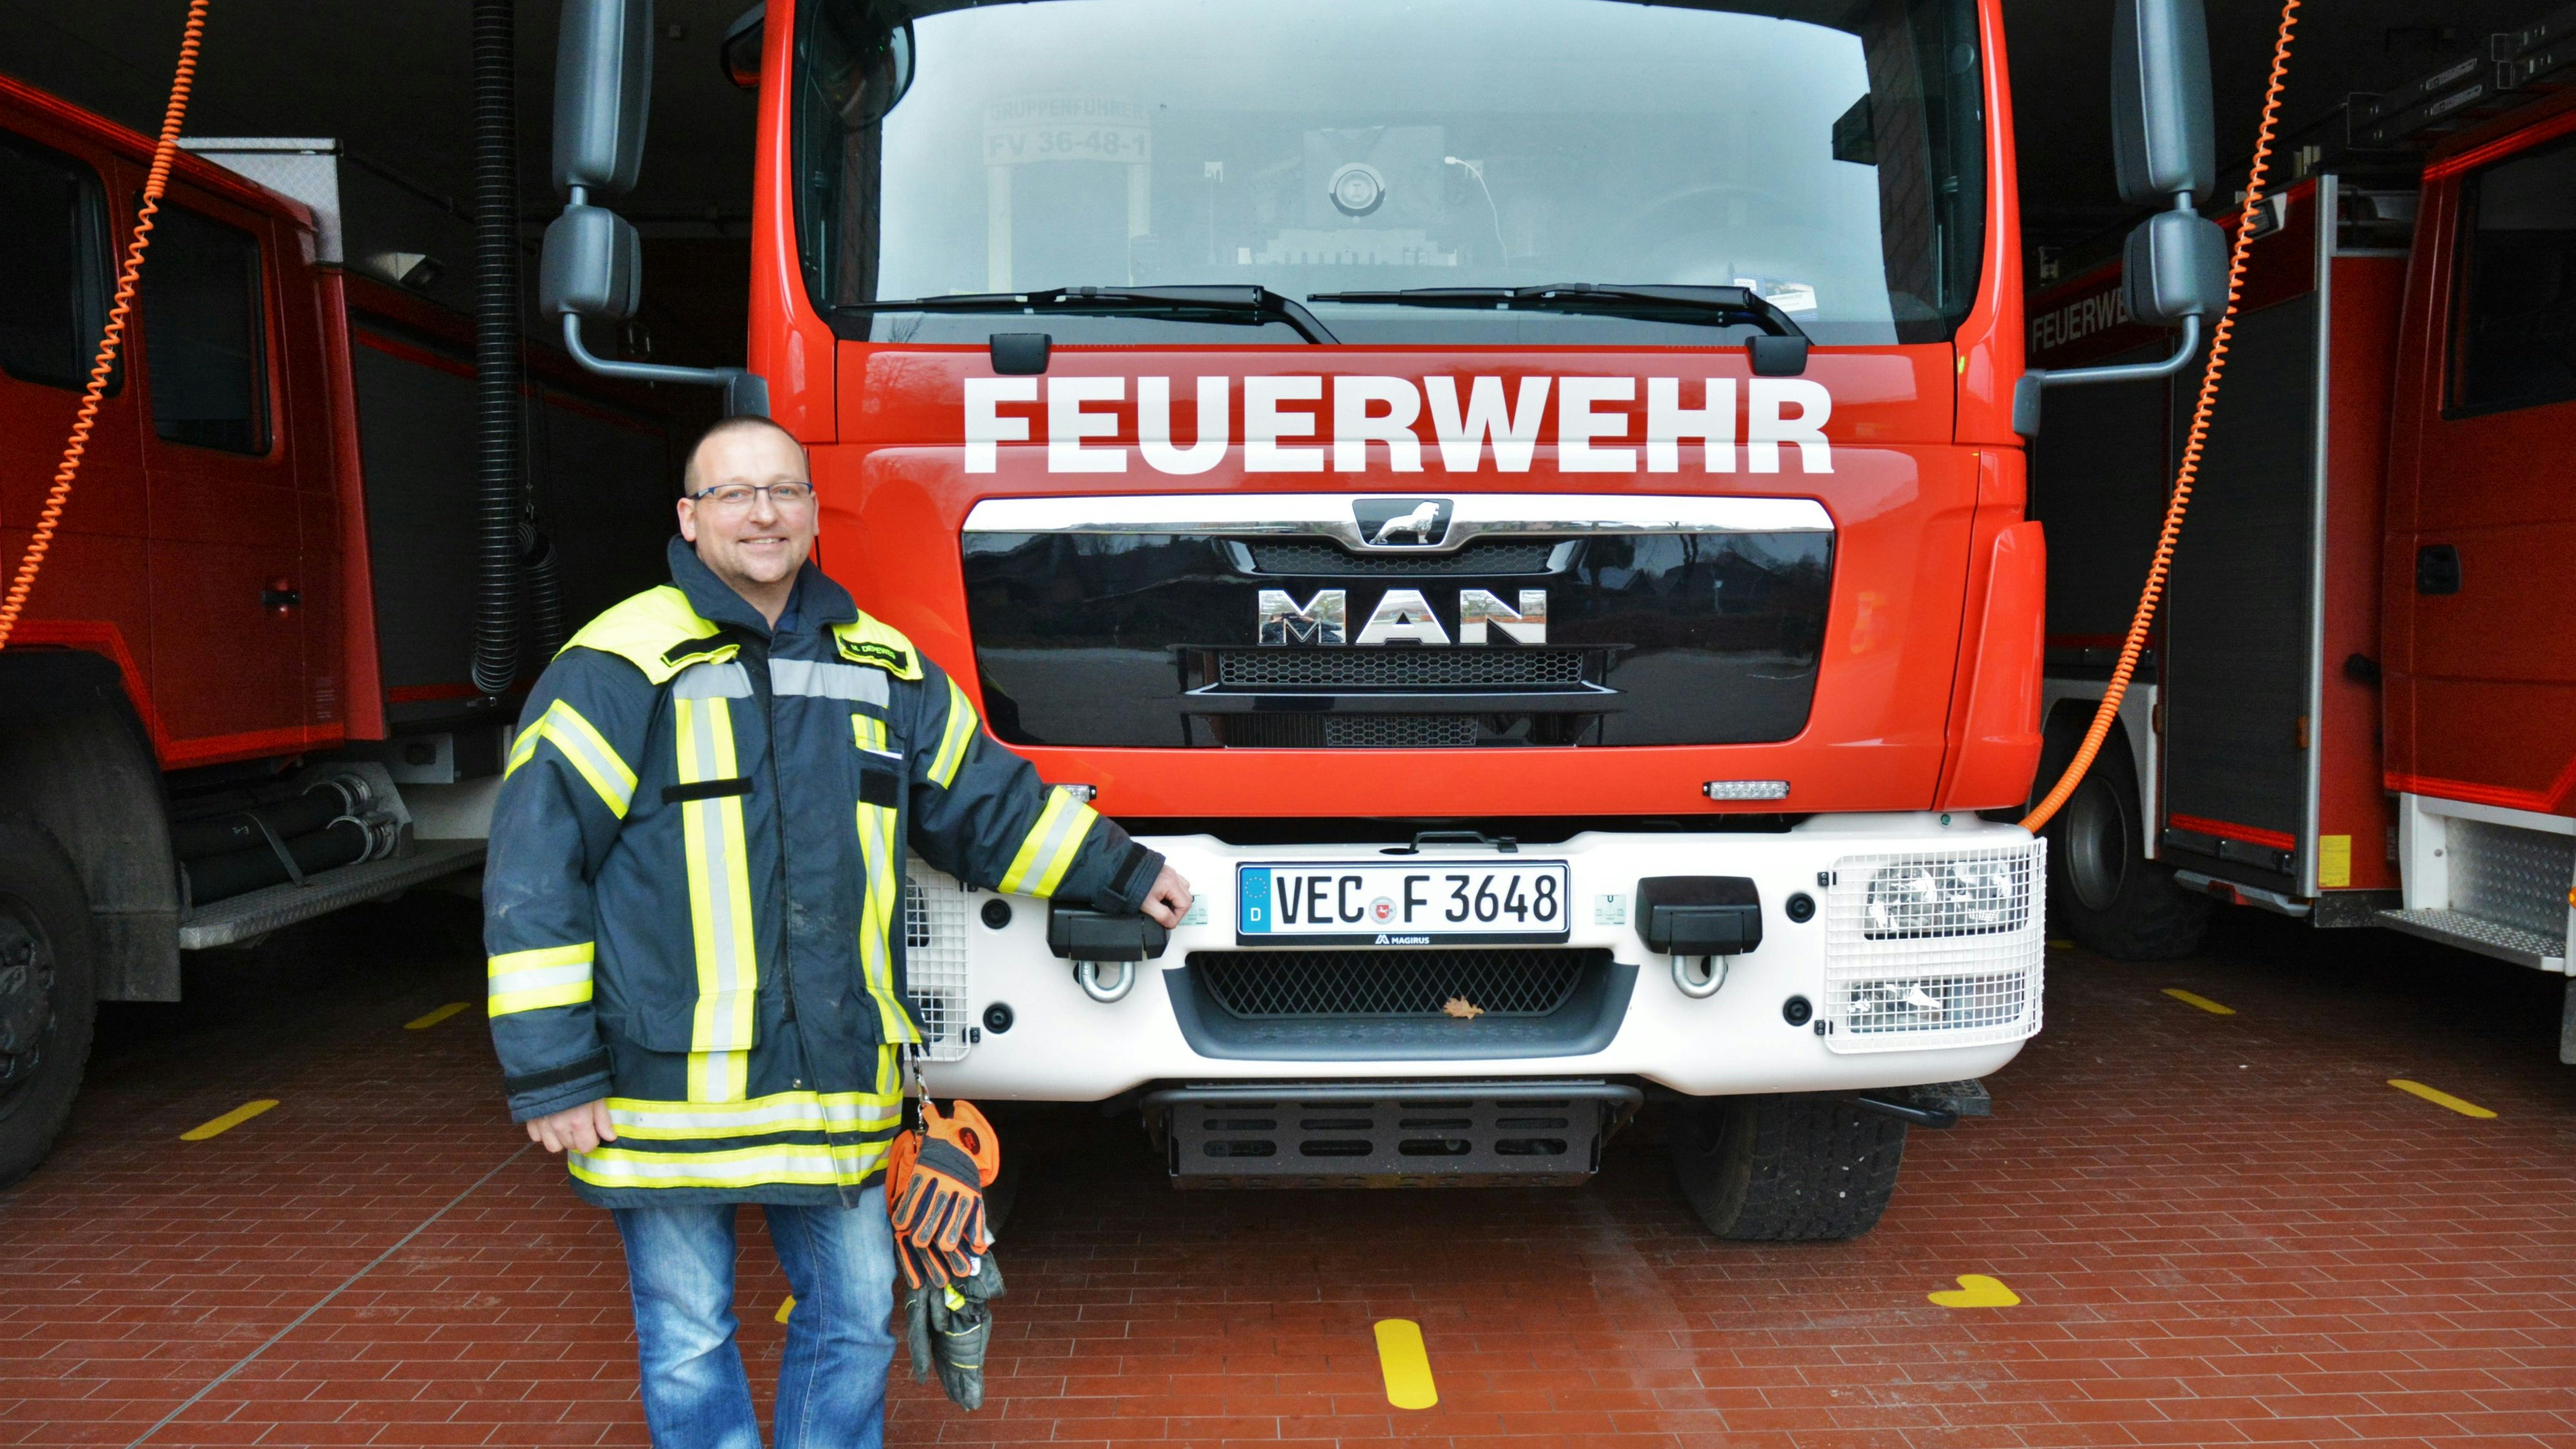 Möchte Menschen helfen: Der neue Gemeindebrandmeister Marcel Depeweg ist der Feuerwehr beigetreten, da er Menschen in Not helfen will. Foto: E. Wenzel